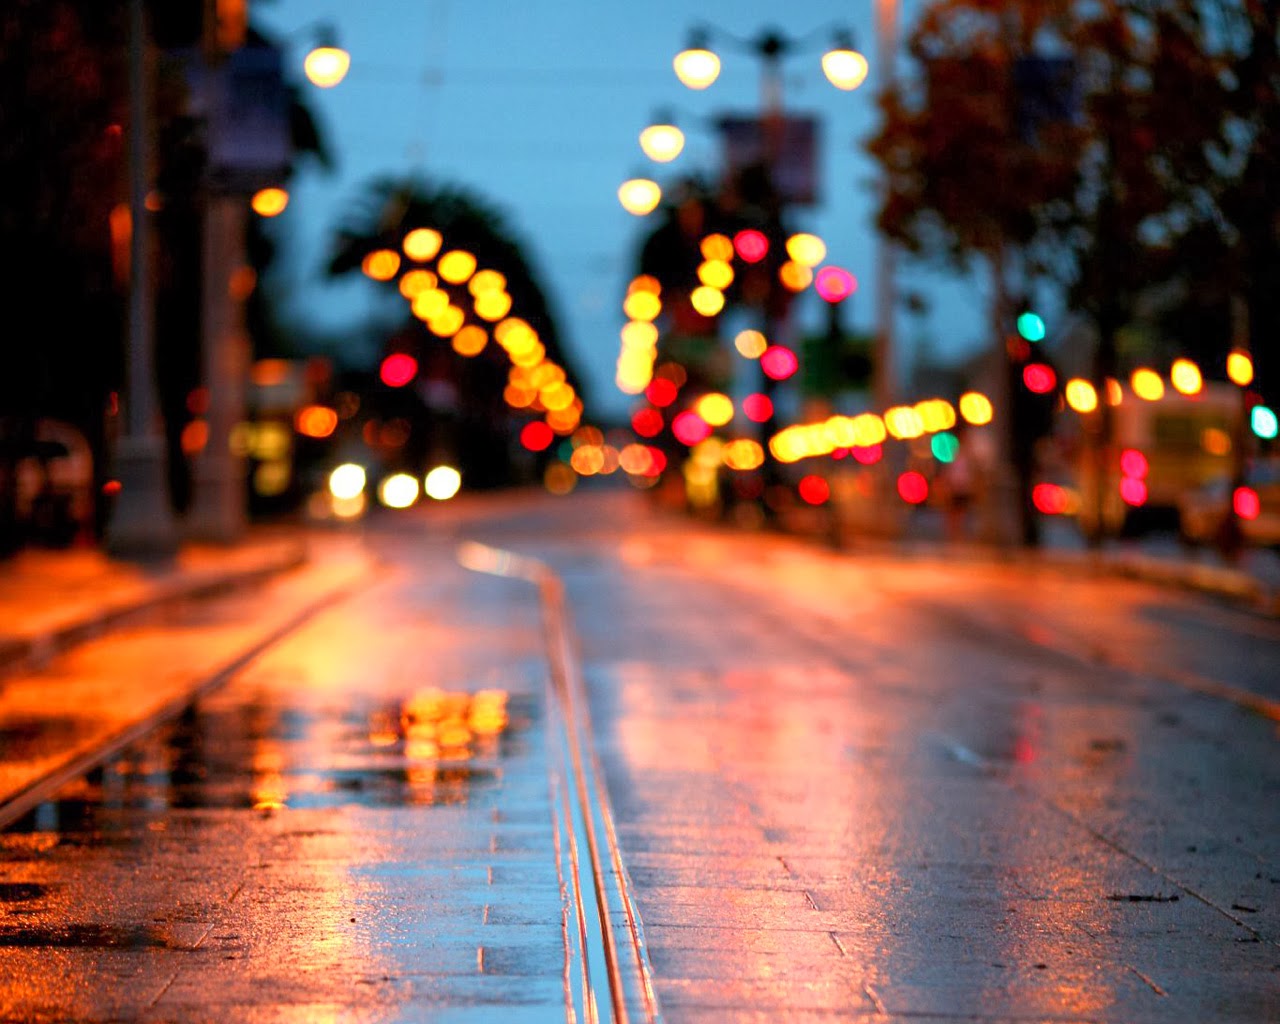 Imagenes Hilandy: Fondo de Pantalla Ciudades en la noche con lluvia